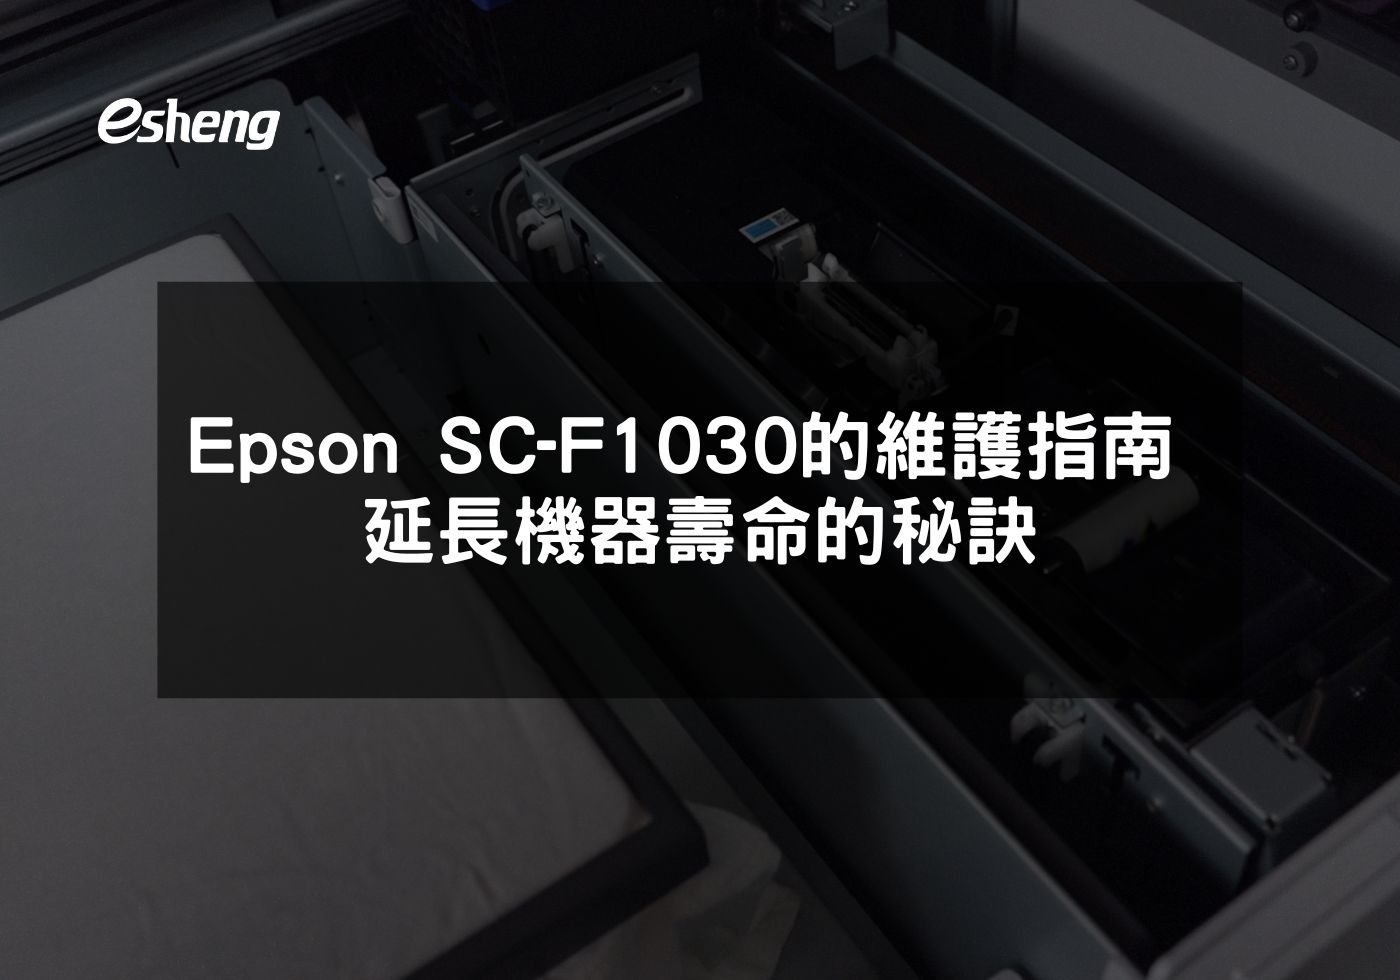 閱讀更多文章 Epson SC-F1030的維護指南 延長機器壽命的秘訣